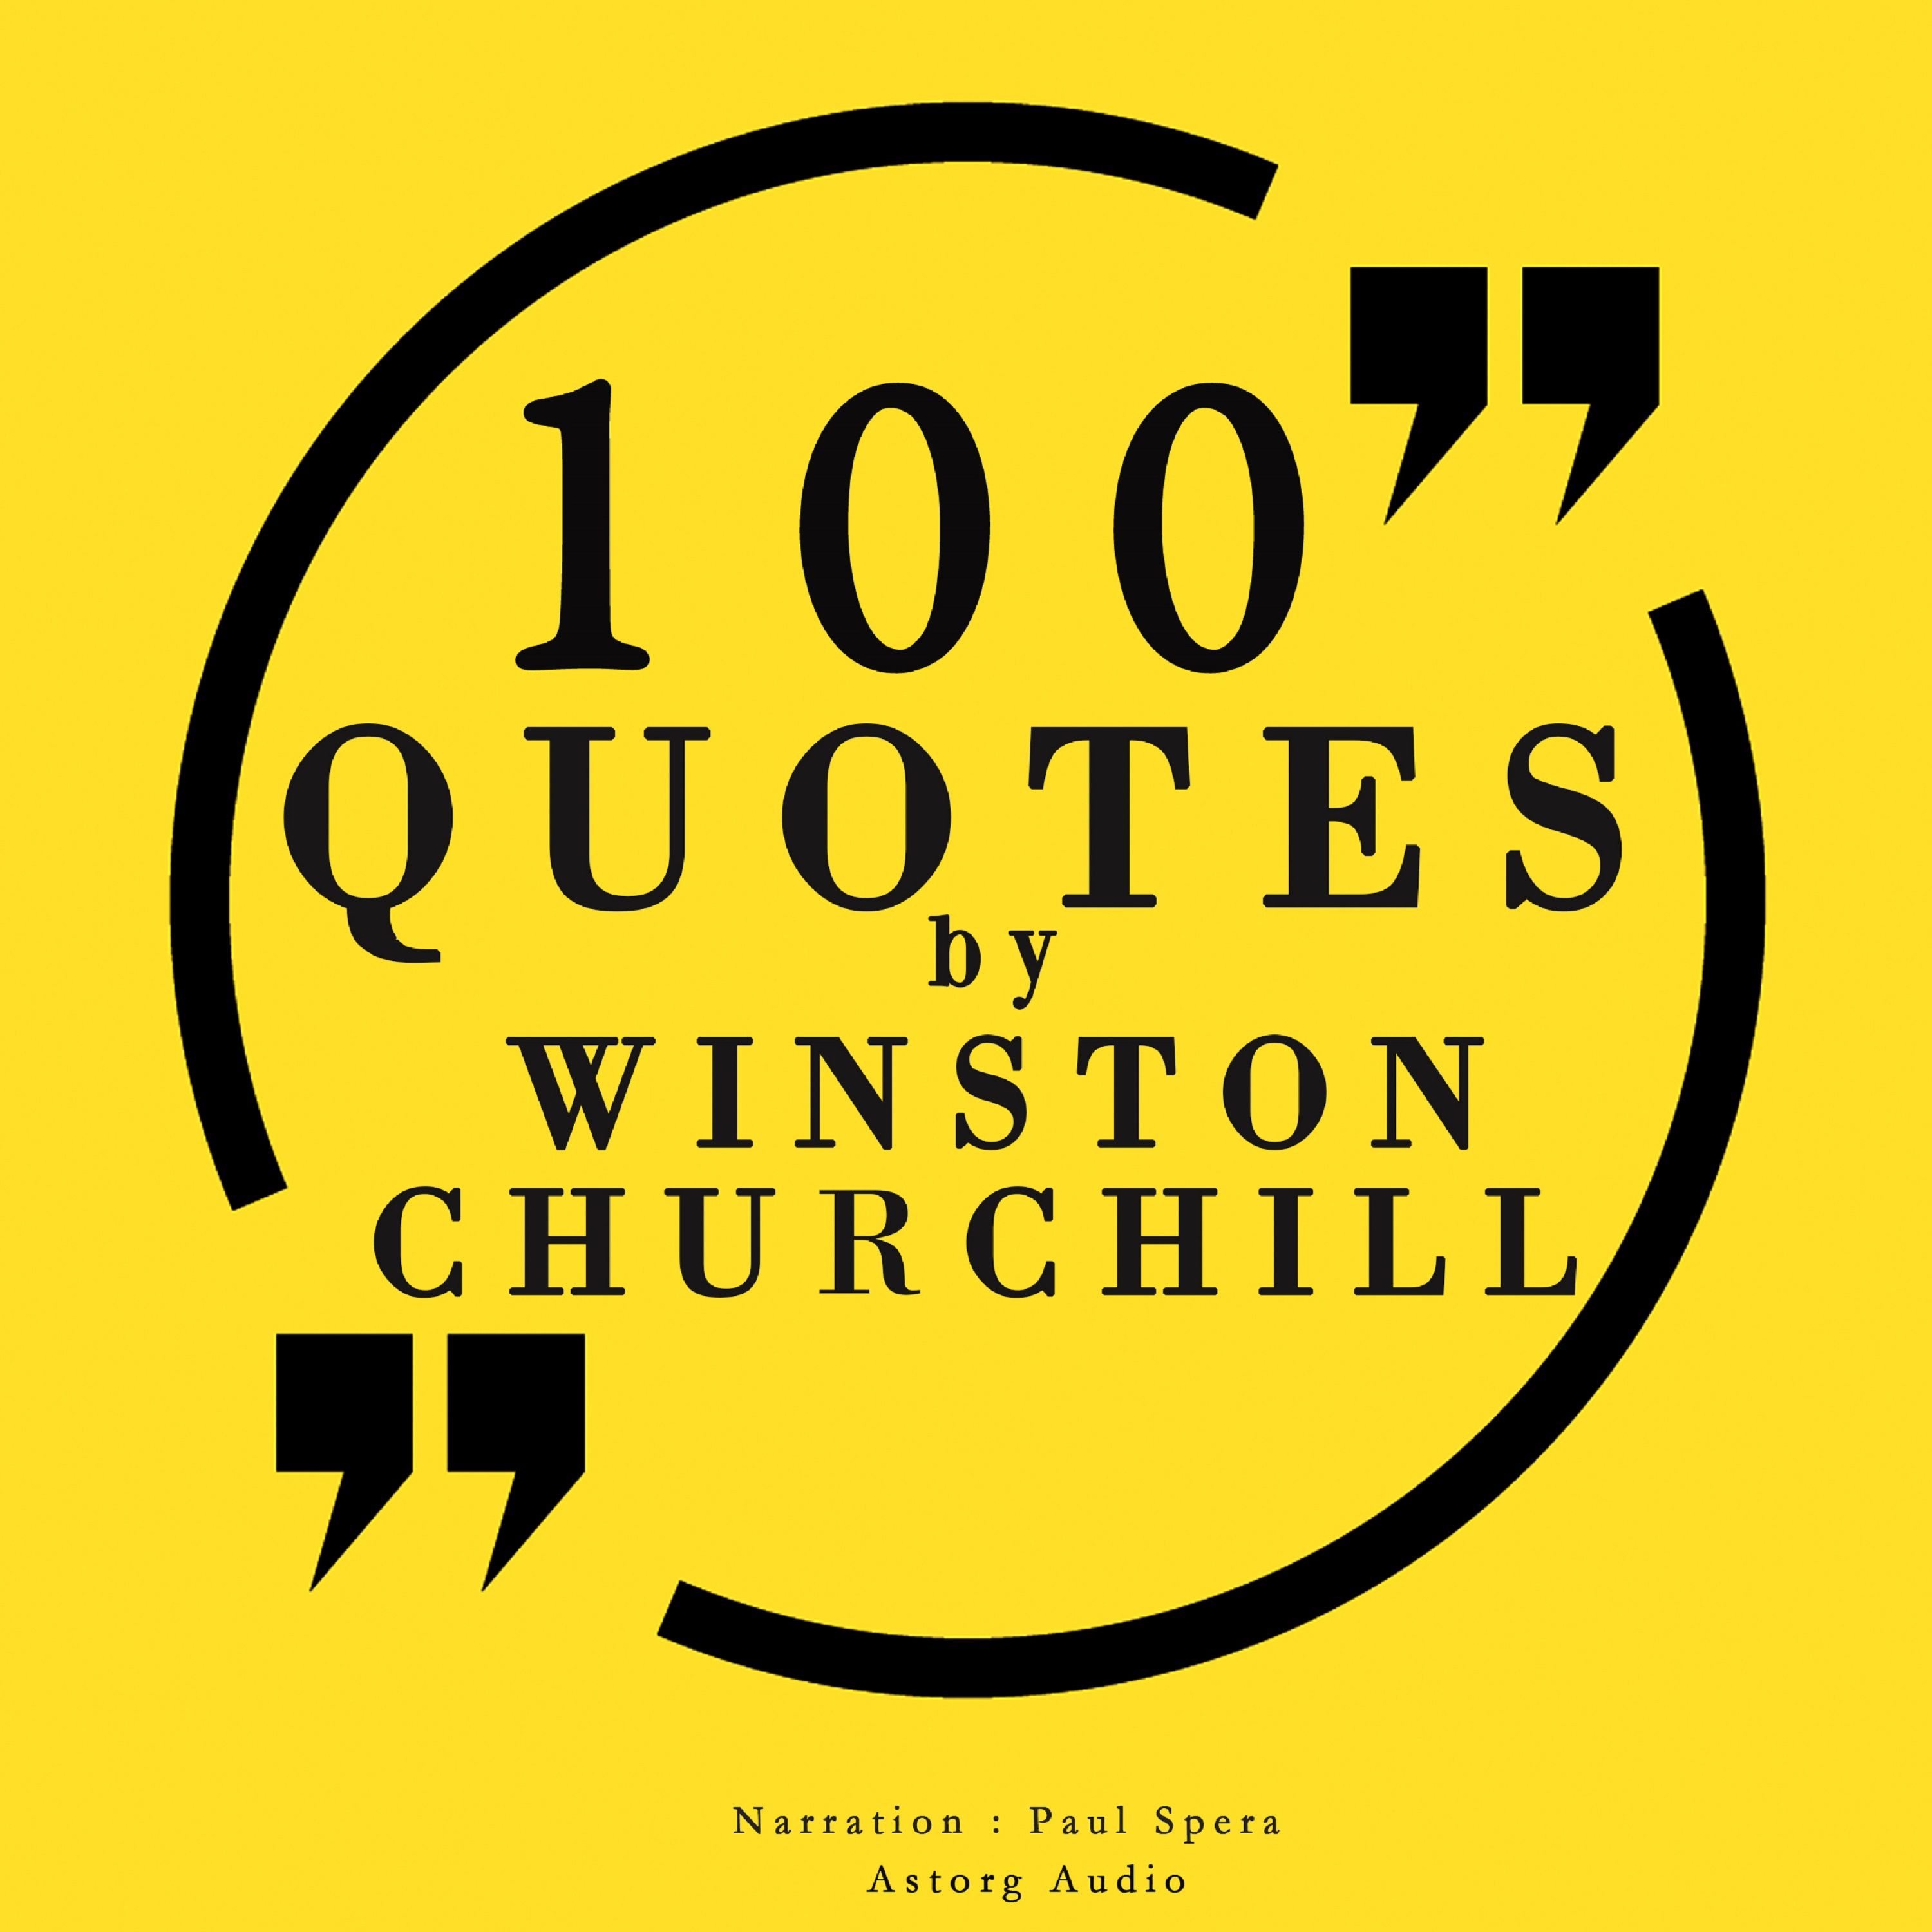 100 Quotes by Winston Churchill, ljudbok av Winston Churchill